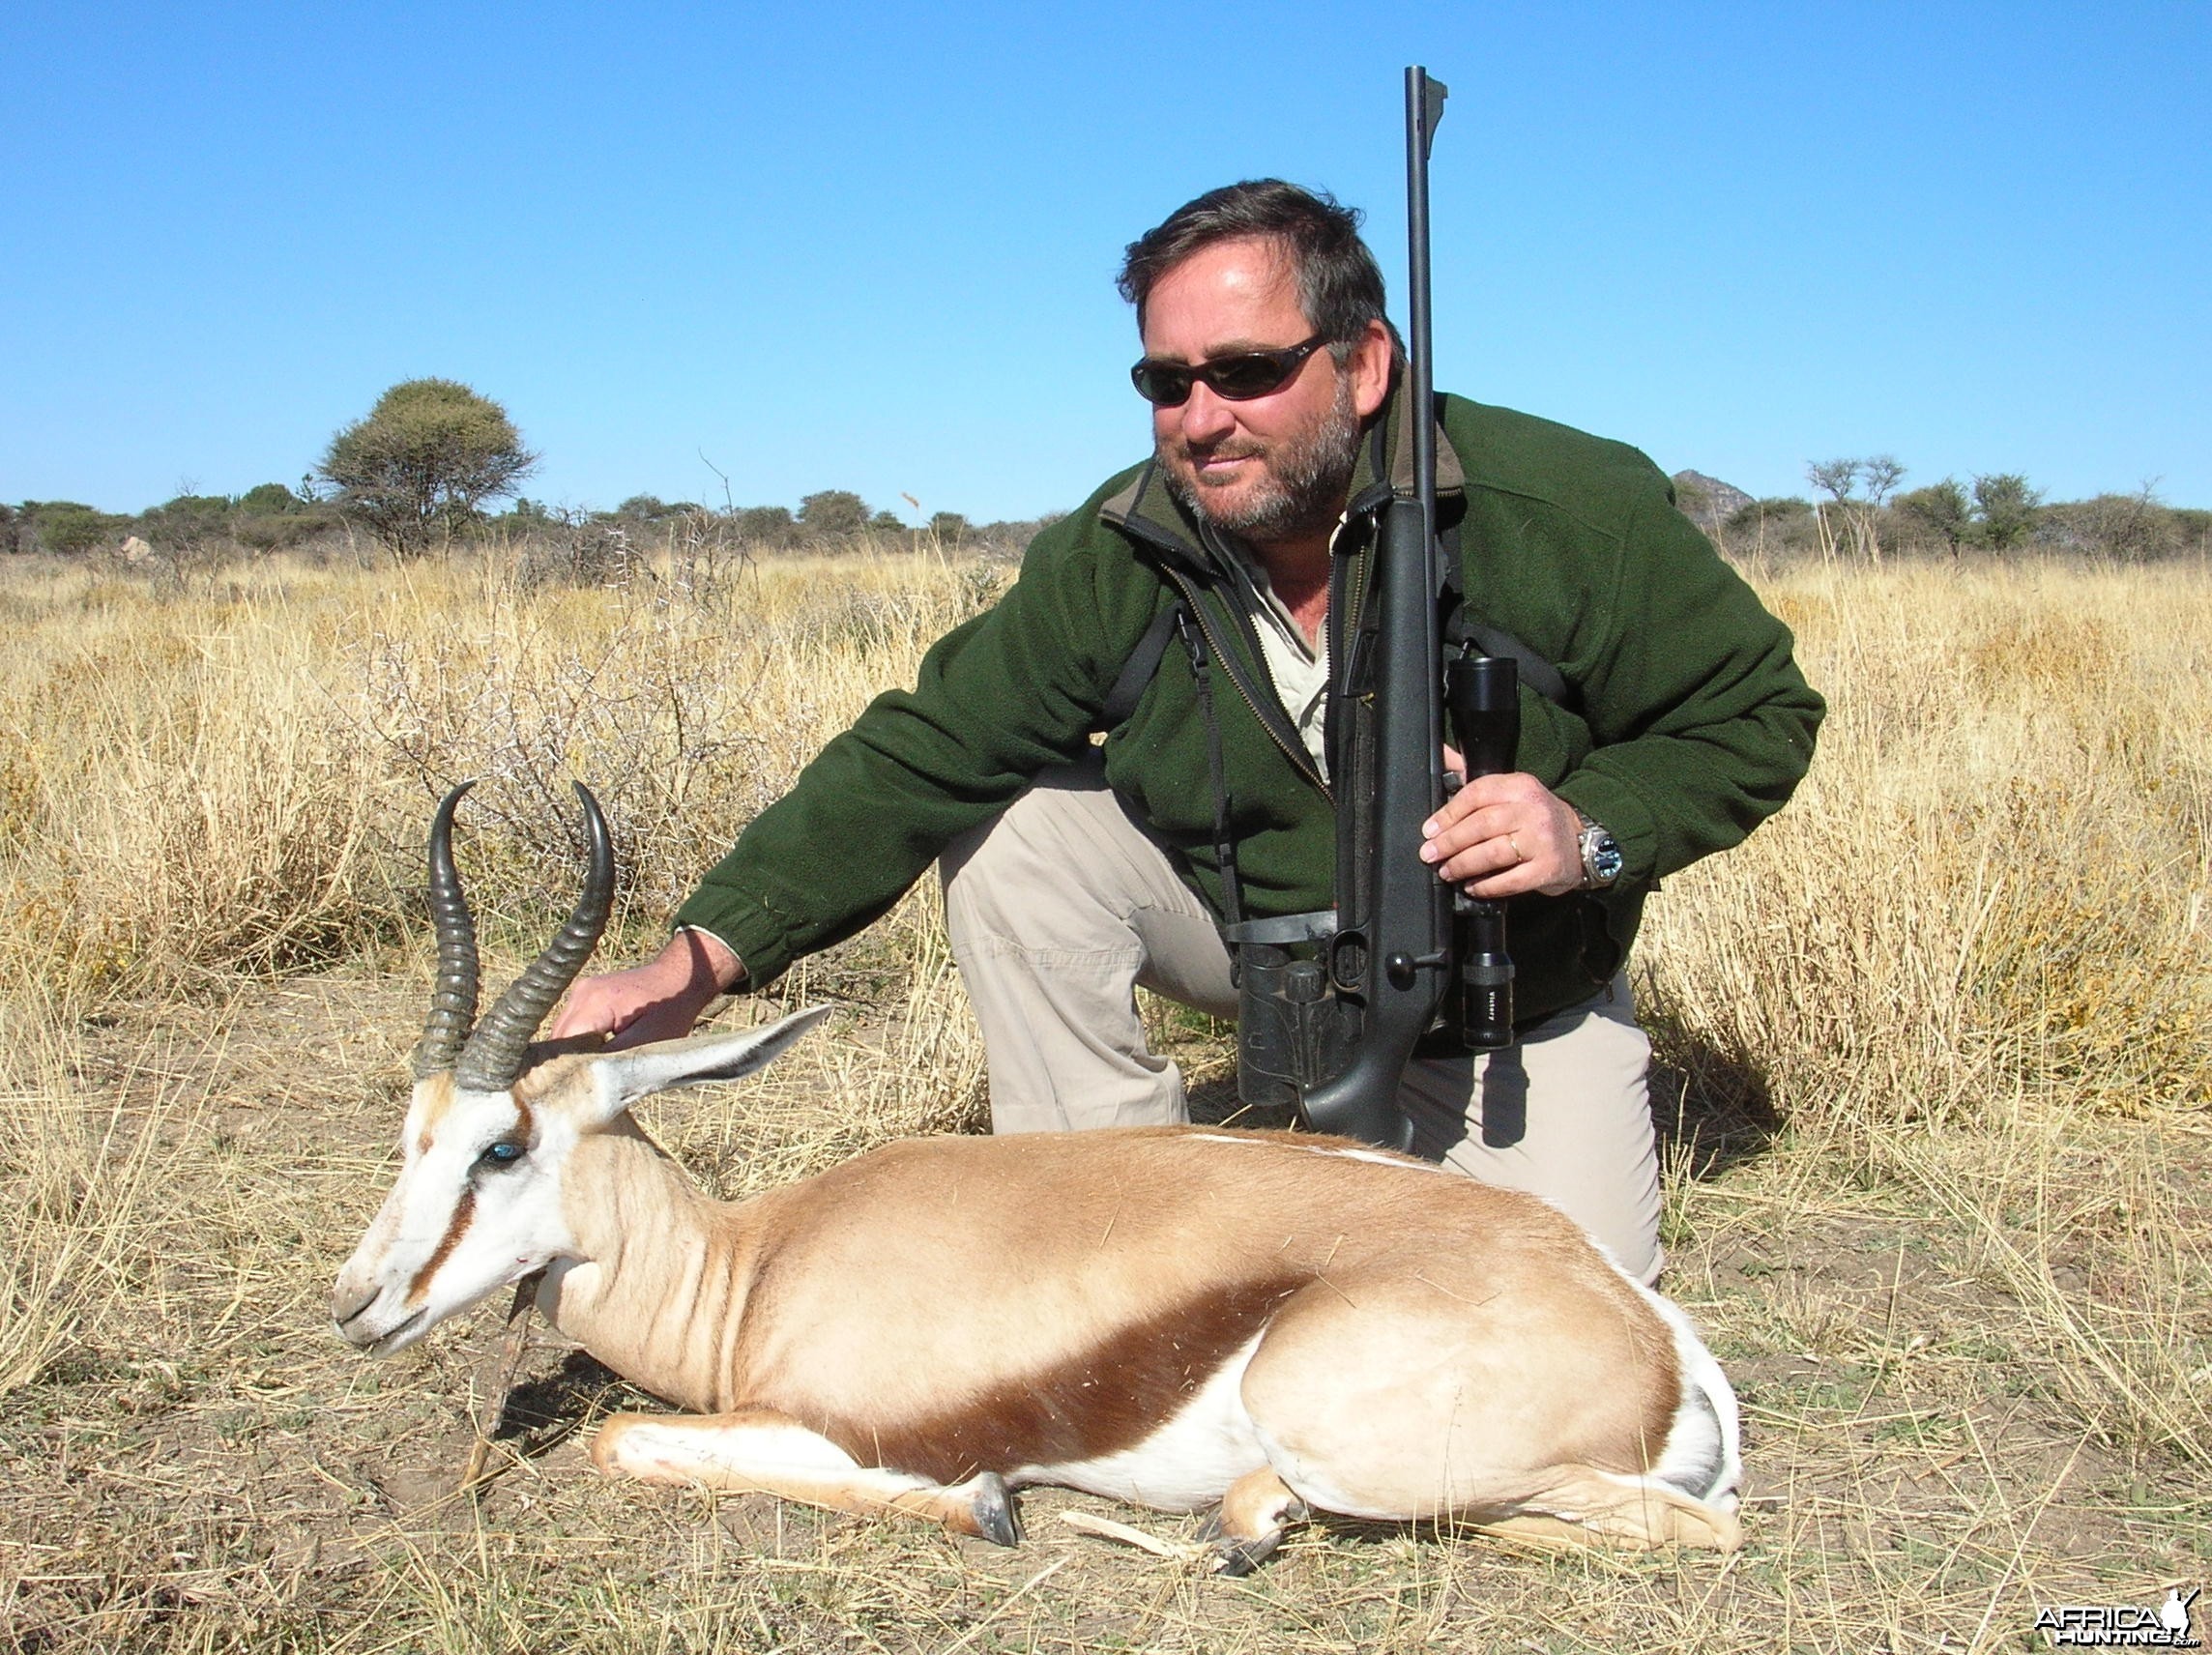 Hunting Springbok in Namibia